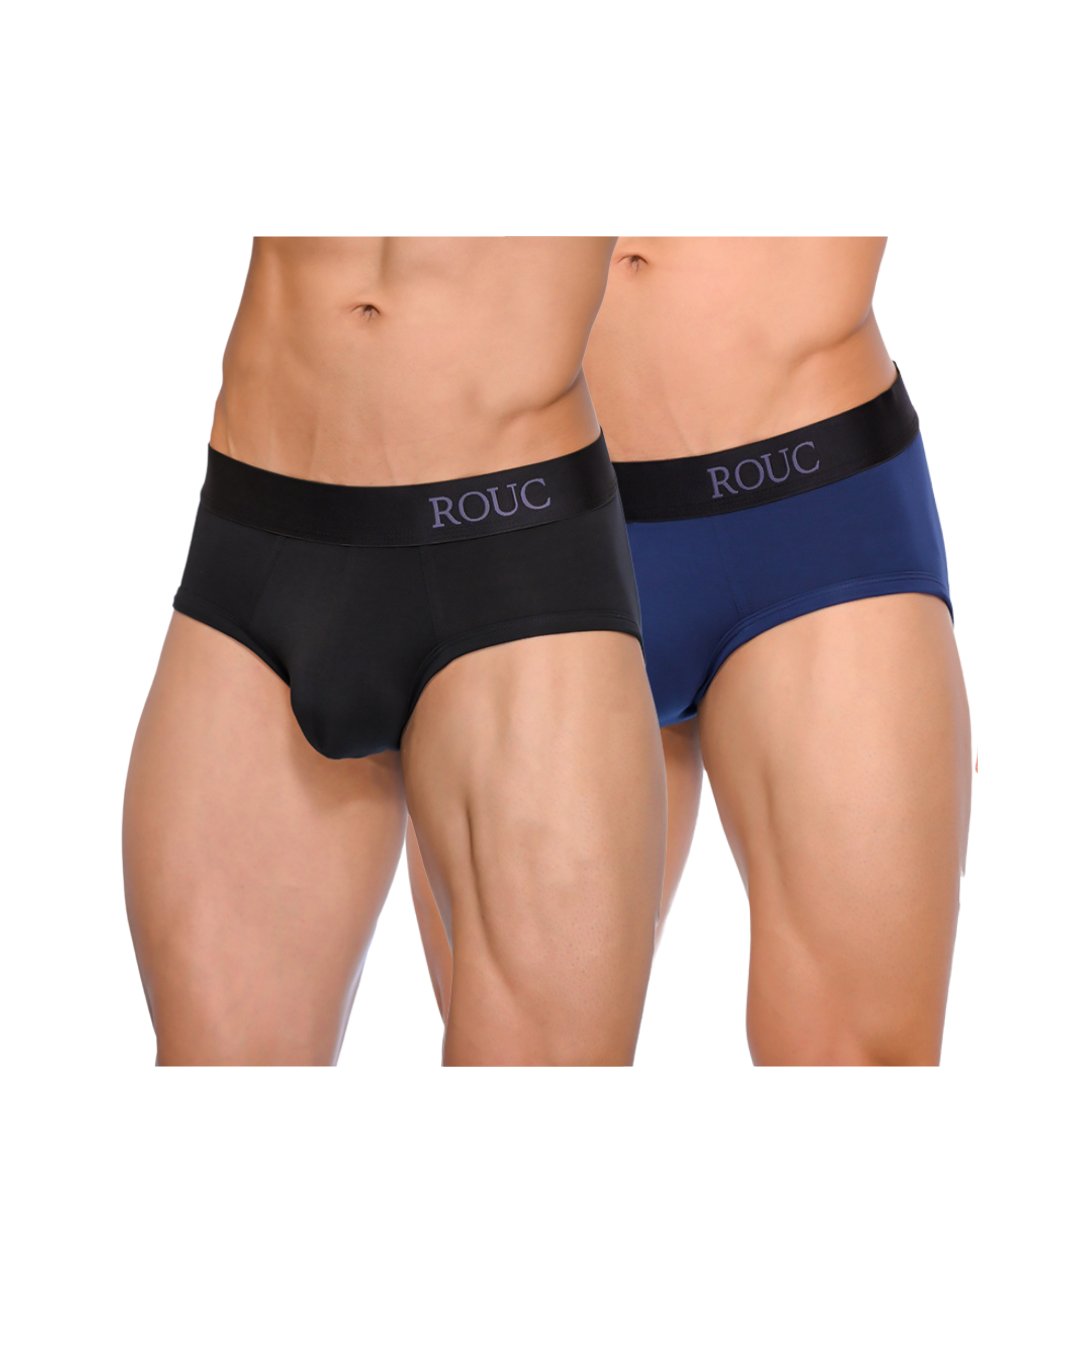 Men Underwear - BRIEFS - 2 Pack (Black & Blue)